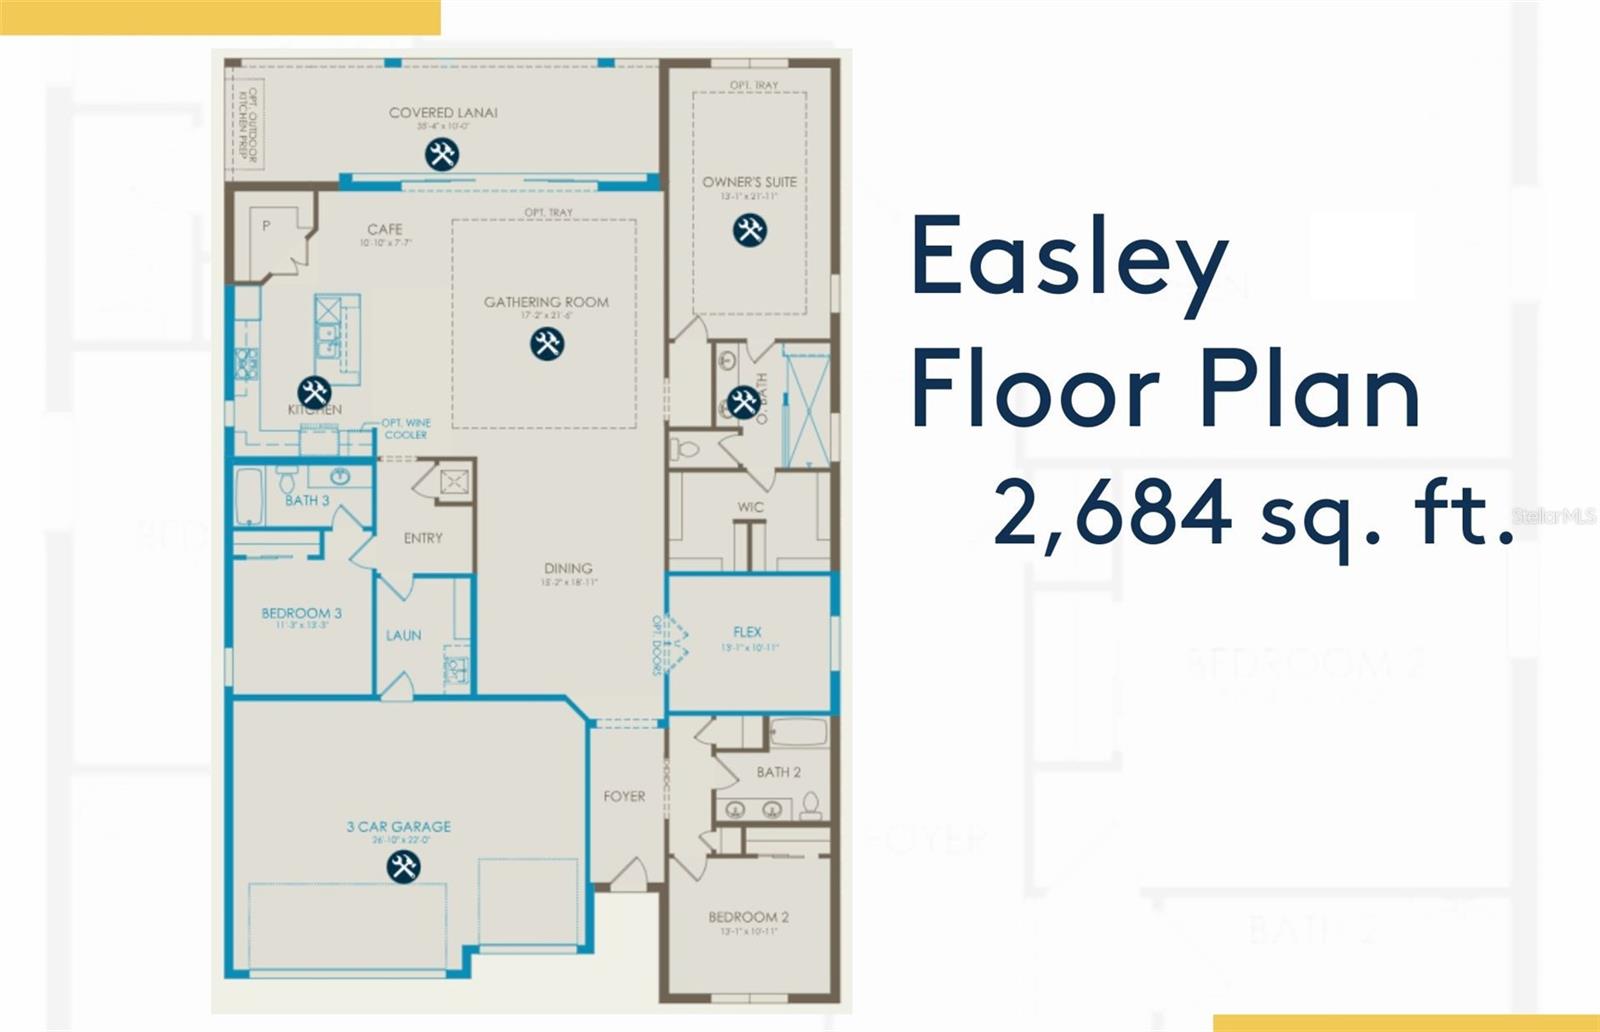 Easley Floor Plan